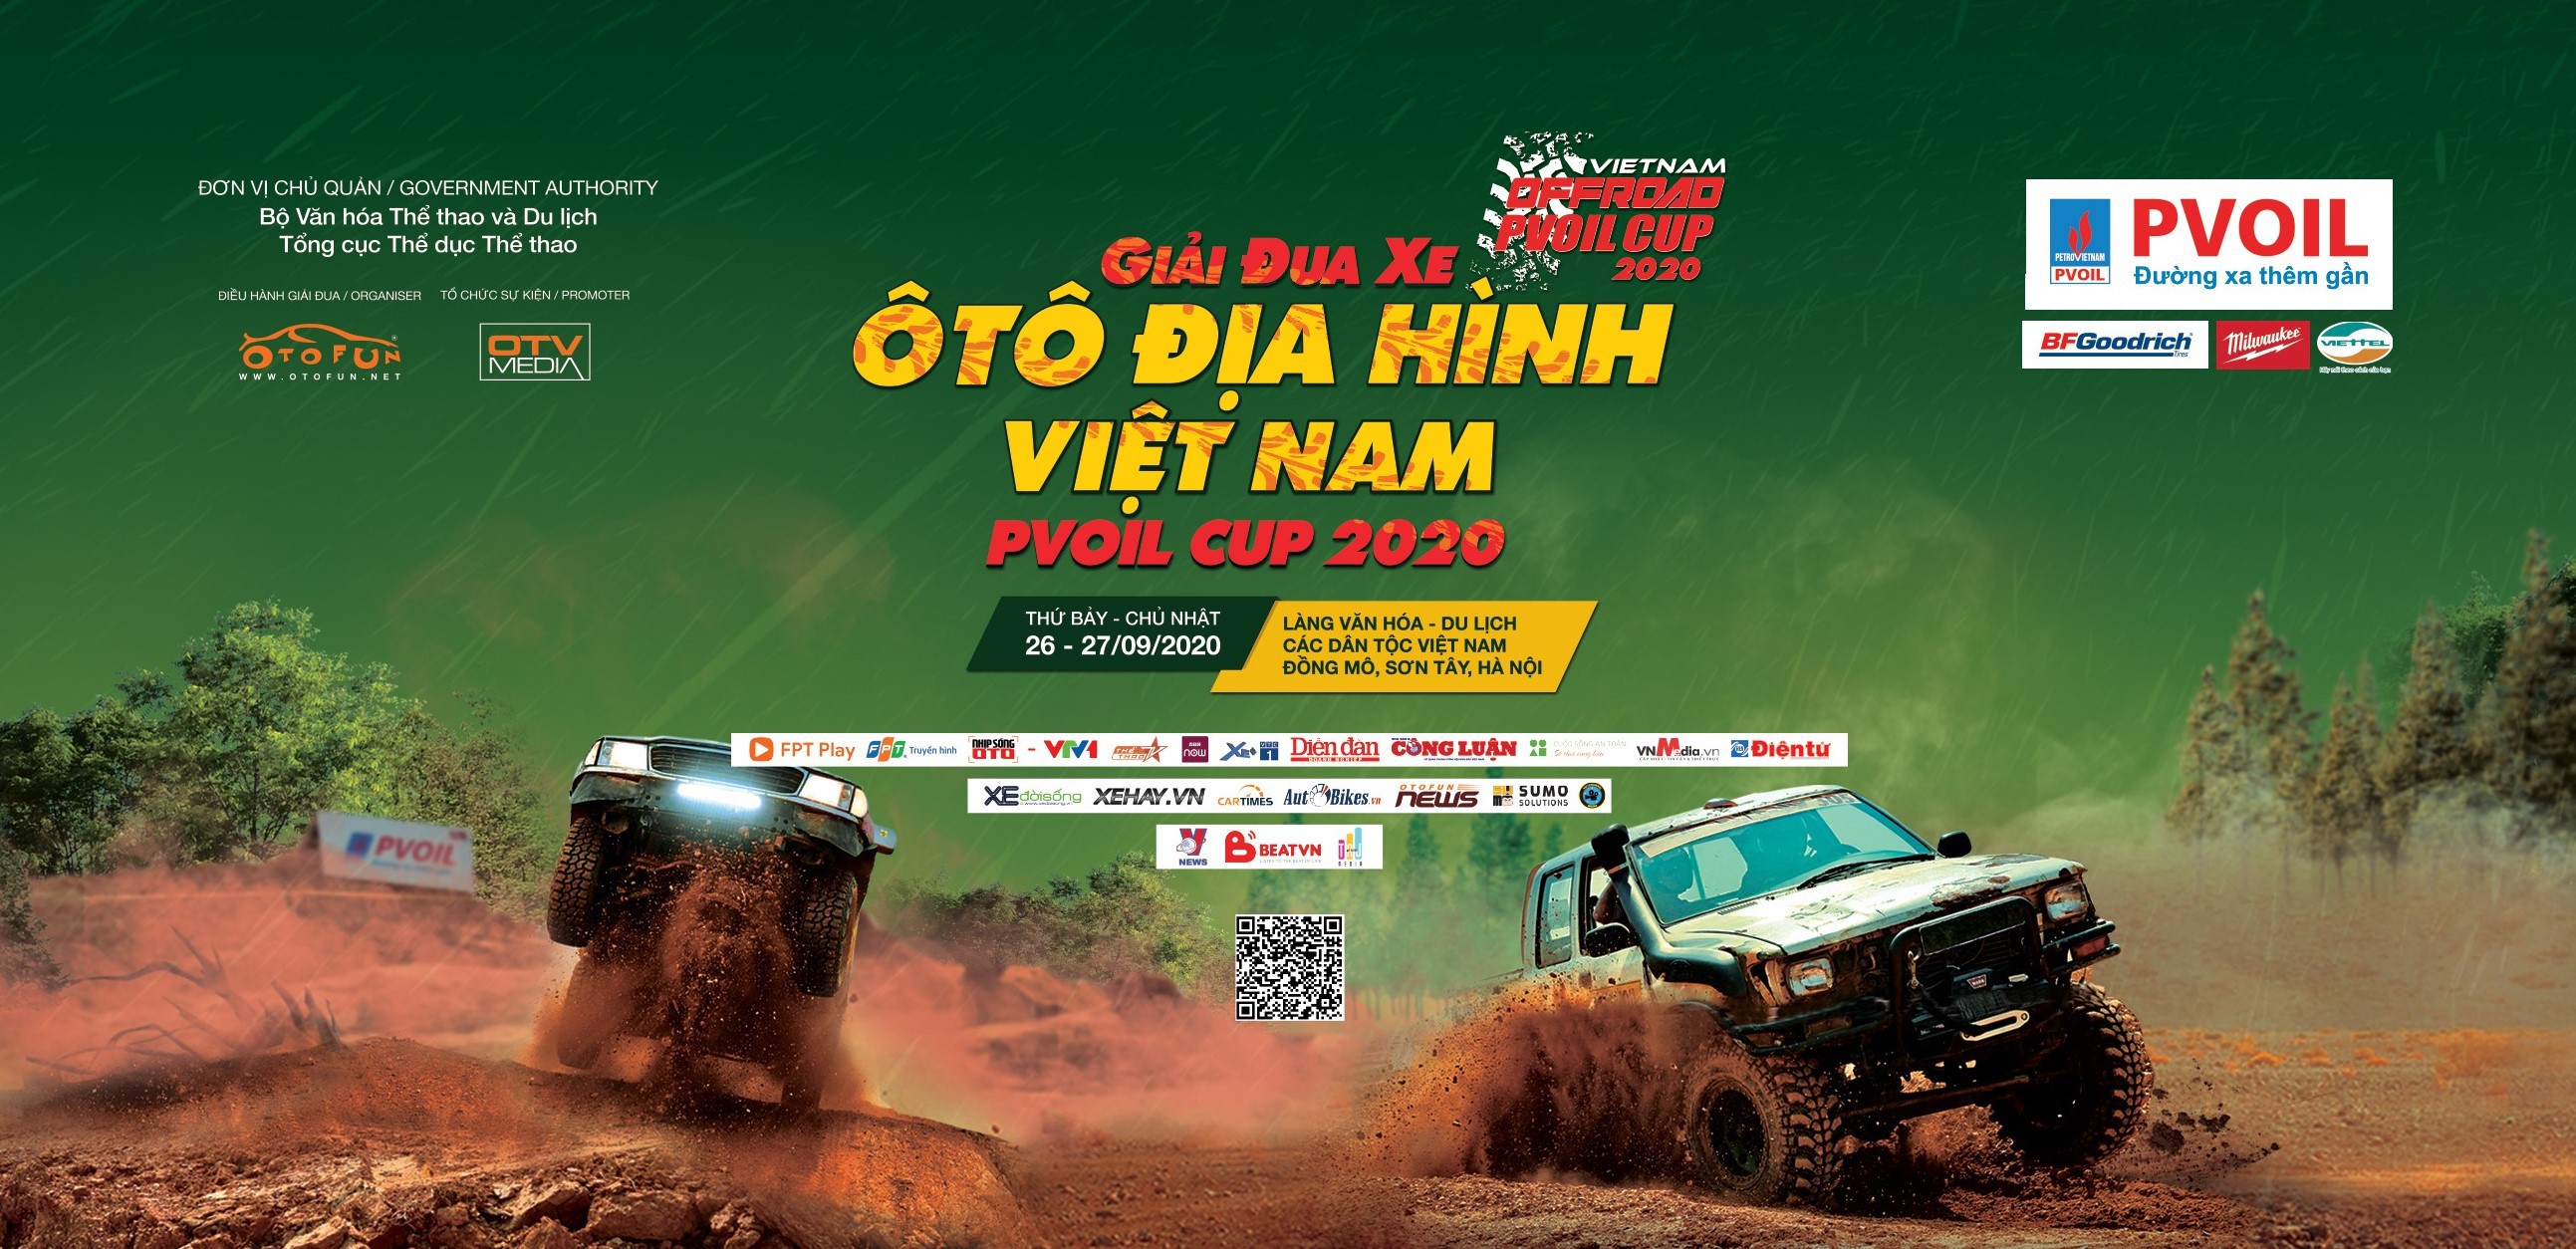 Giải đua xe Ô tô địa hình Việt Nam PVOIL Cup 2020